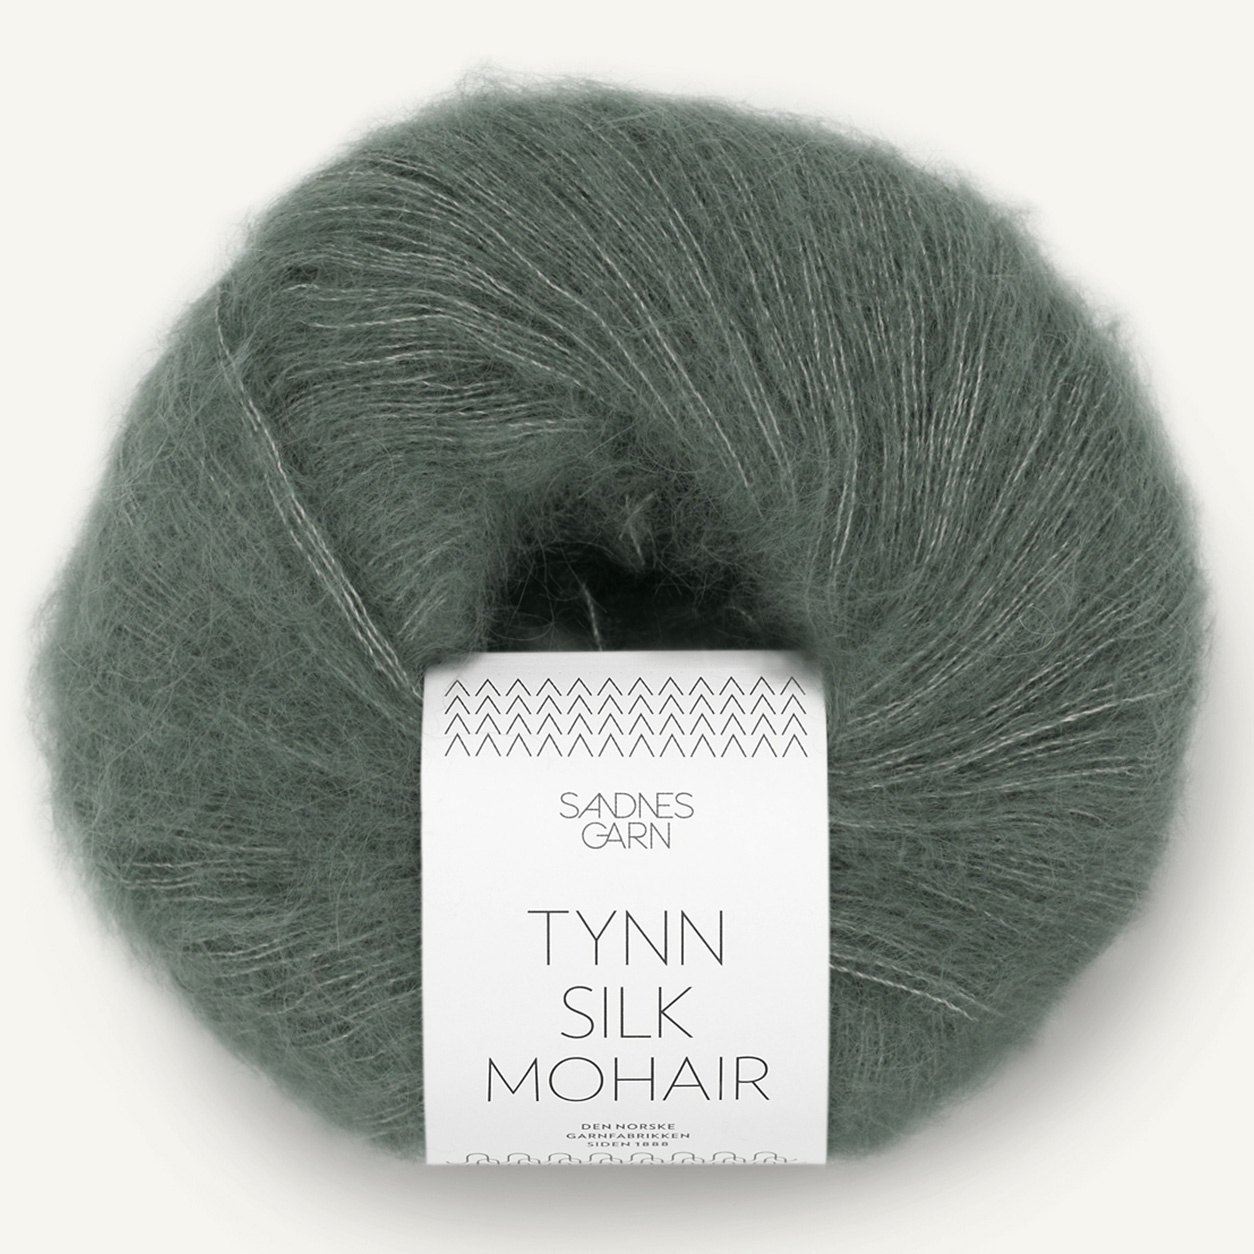 Sandnes Tynn Silk Mohair, 9071, Dunkles Staubgrün